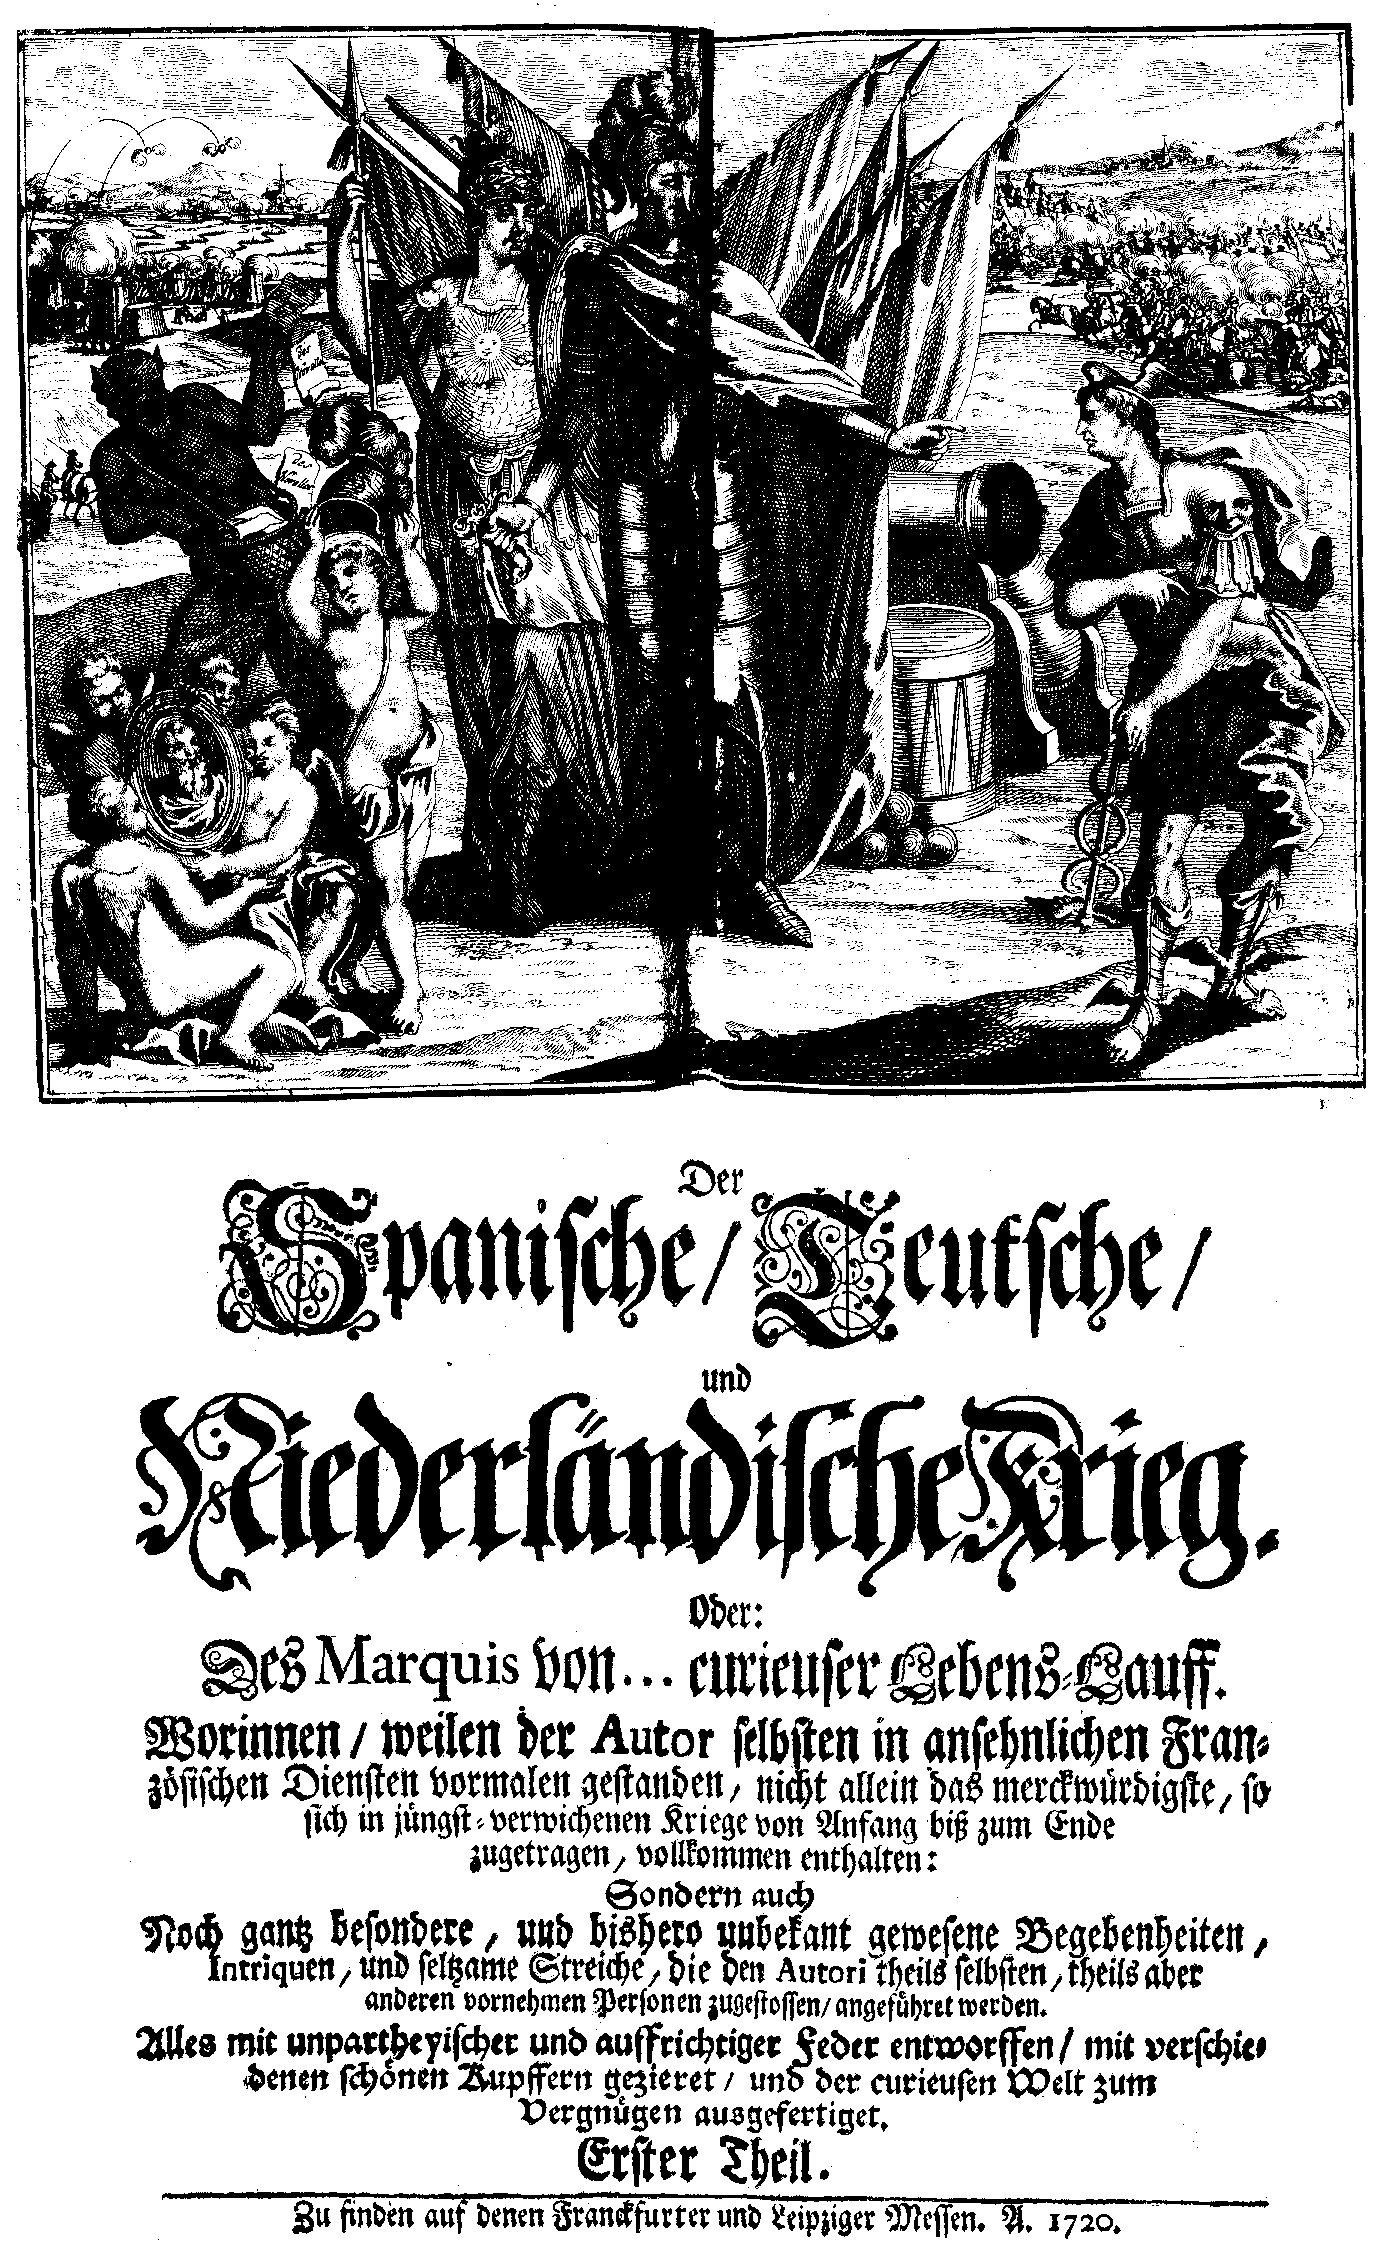 Der spanische, teutsche, und niederländische Krieg oder: des Marquis von ... curieuser Lebens-Lauff, 1-2 (Franckfurt/ Leipzig, 1720).